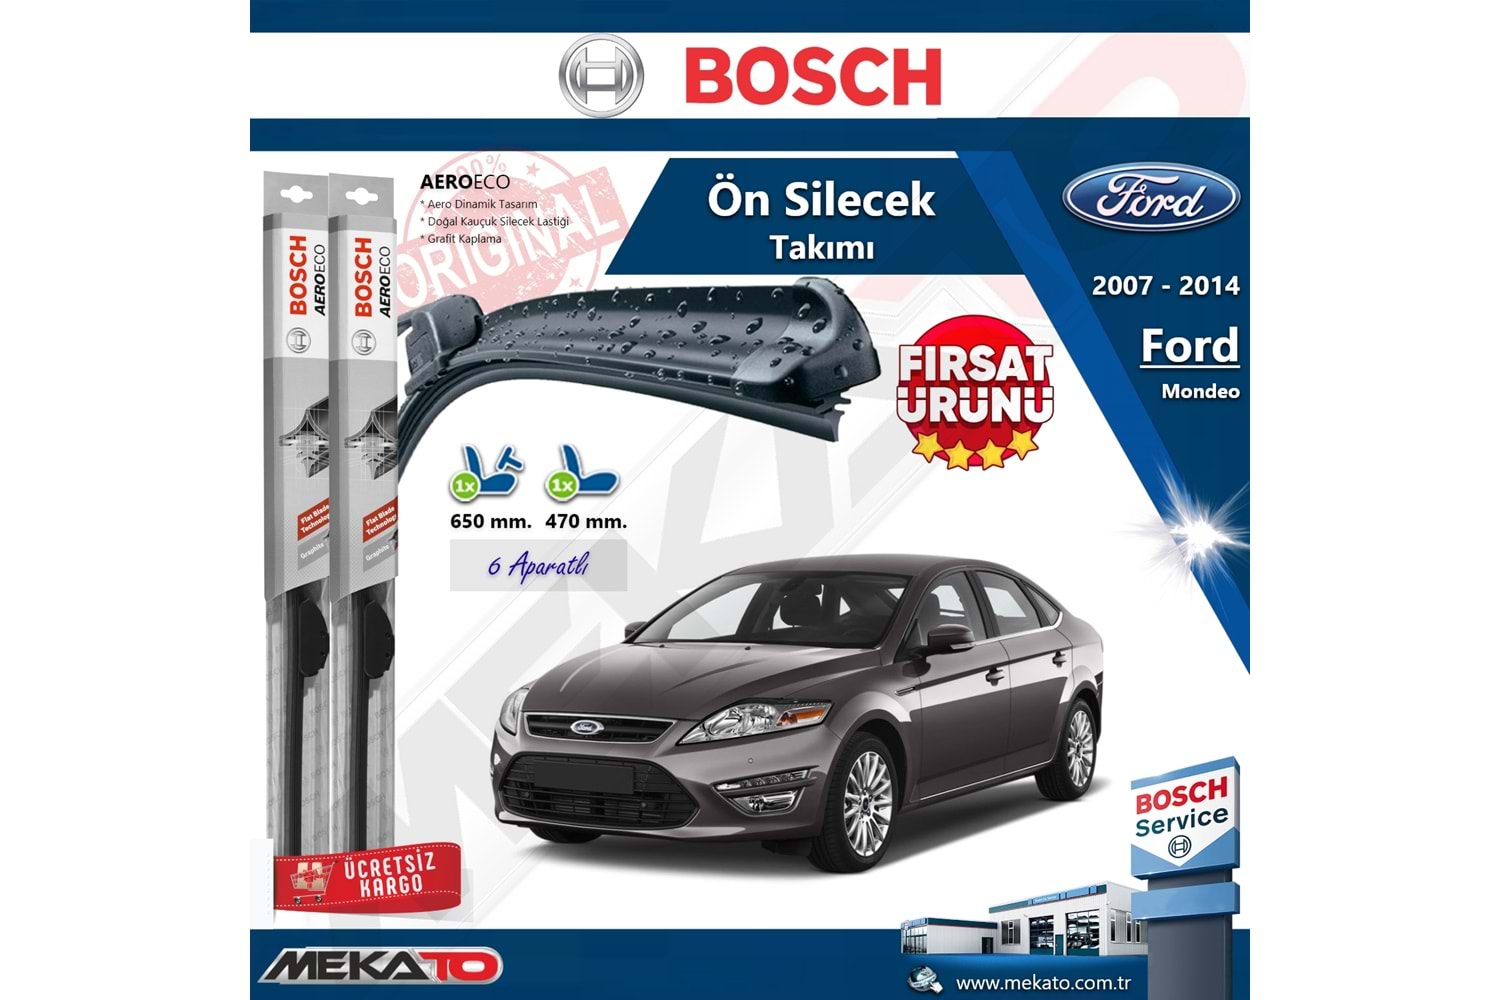 Ford Mondeo Ön Silecek Takımı Bosch Aero Eco 2007-2014